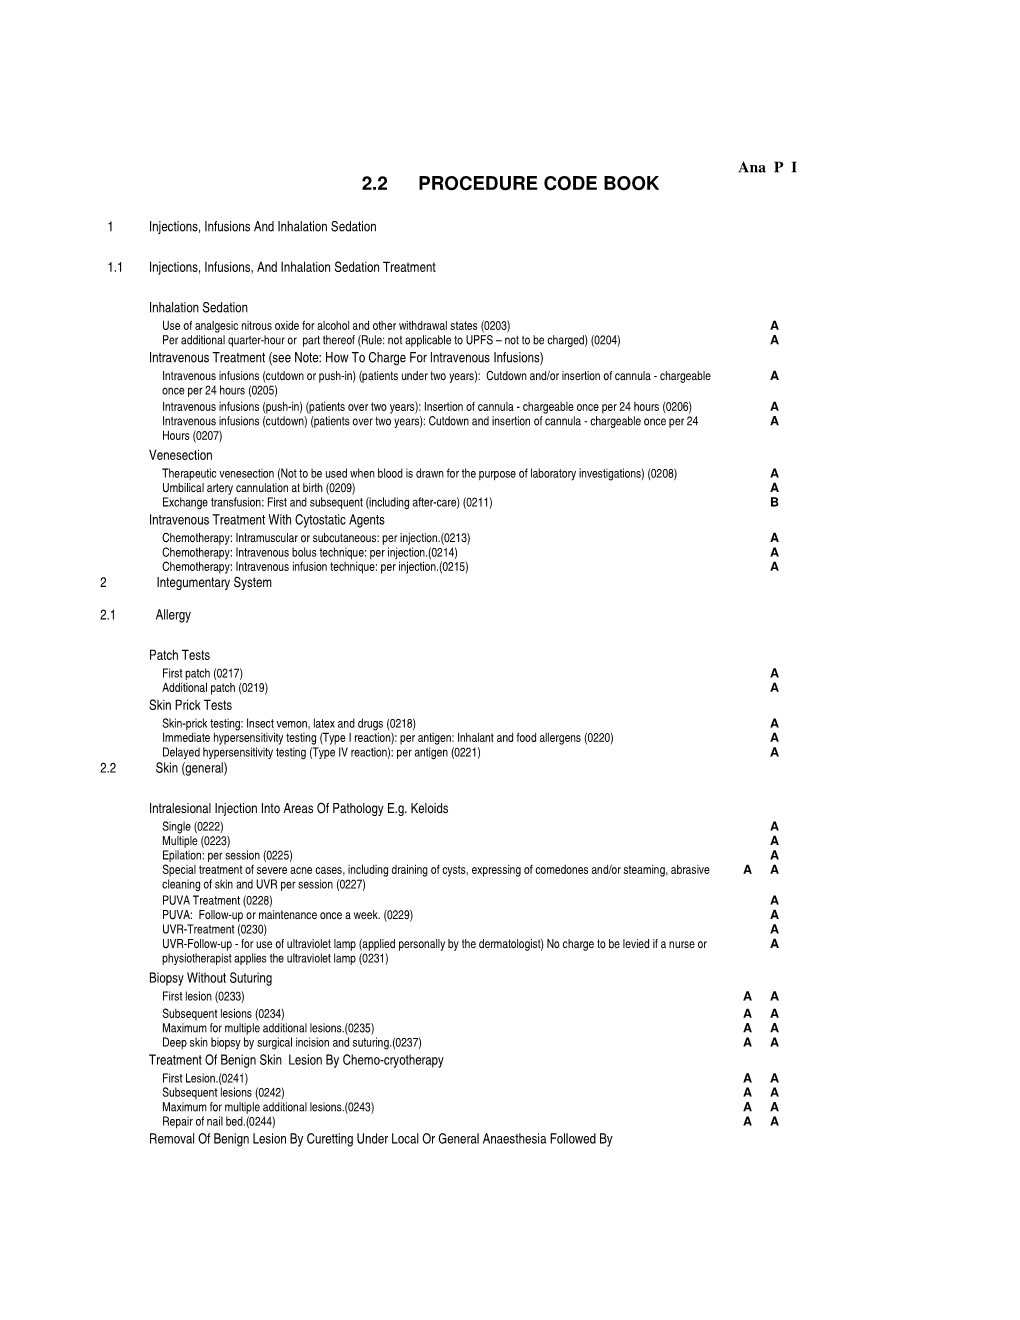 2.2 Procedure Code Book